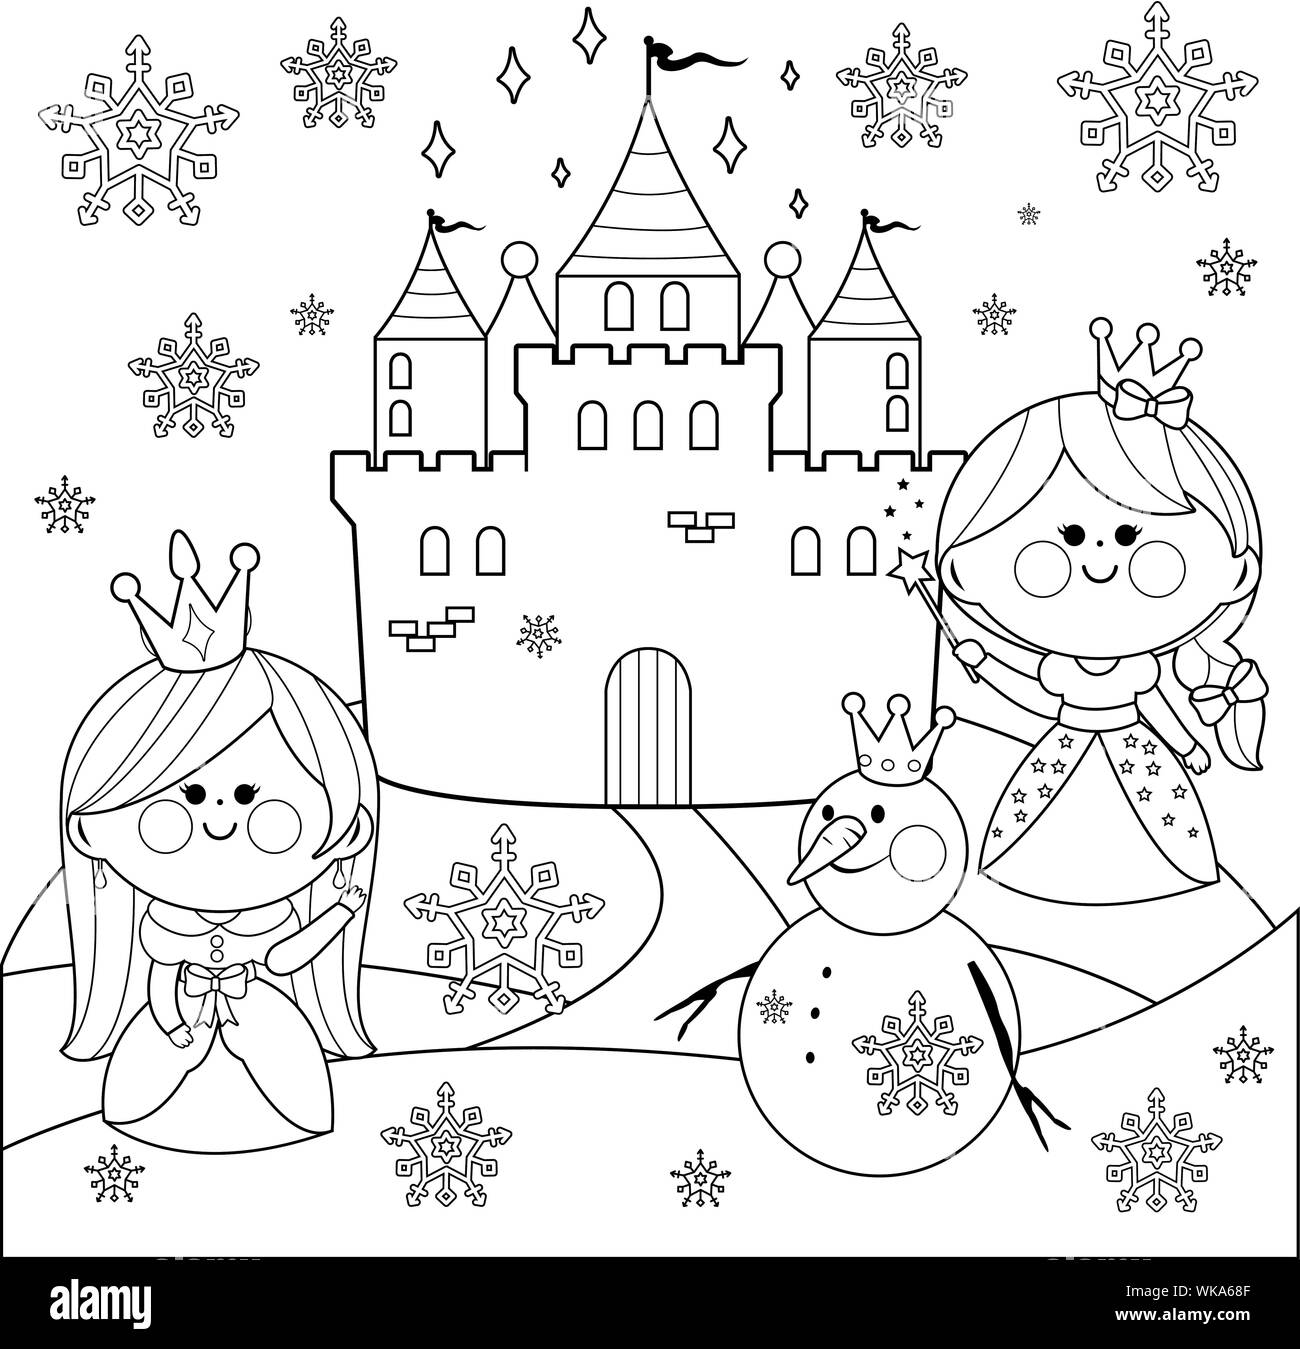 Schöne Prinzessinnen in einer verschneiten Landschaft mit einem Schloss und einem Schneemann. Schwarze und weiße Färbung. Stock Vektor